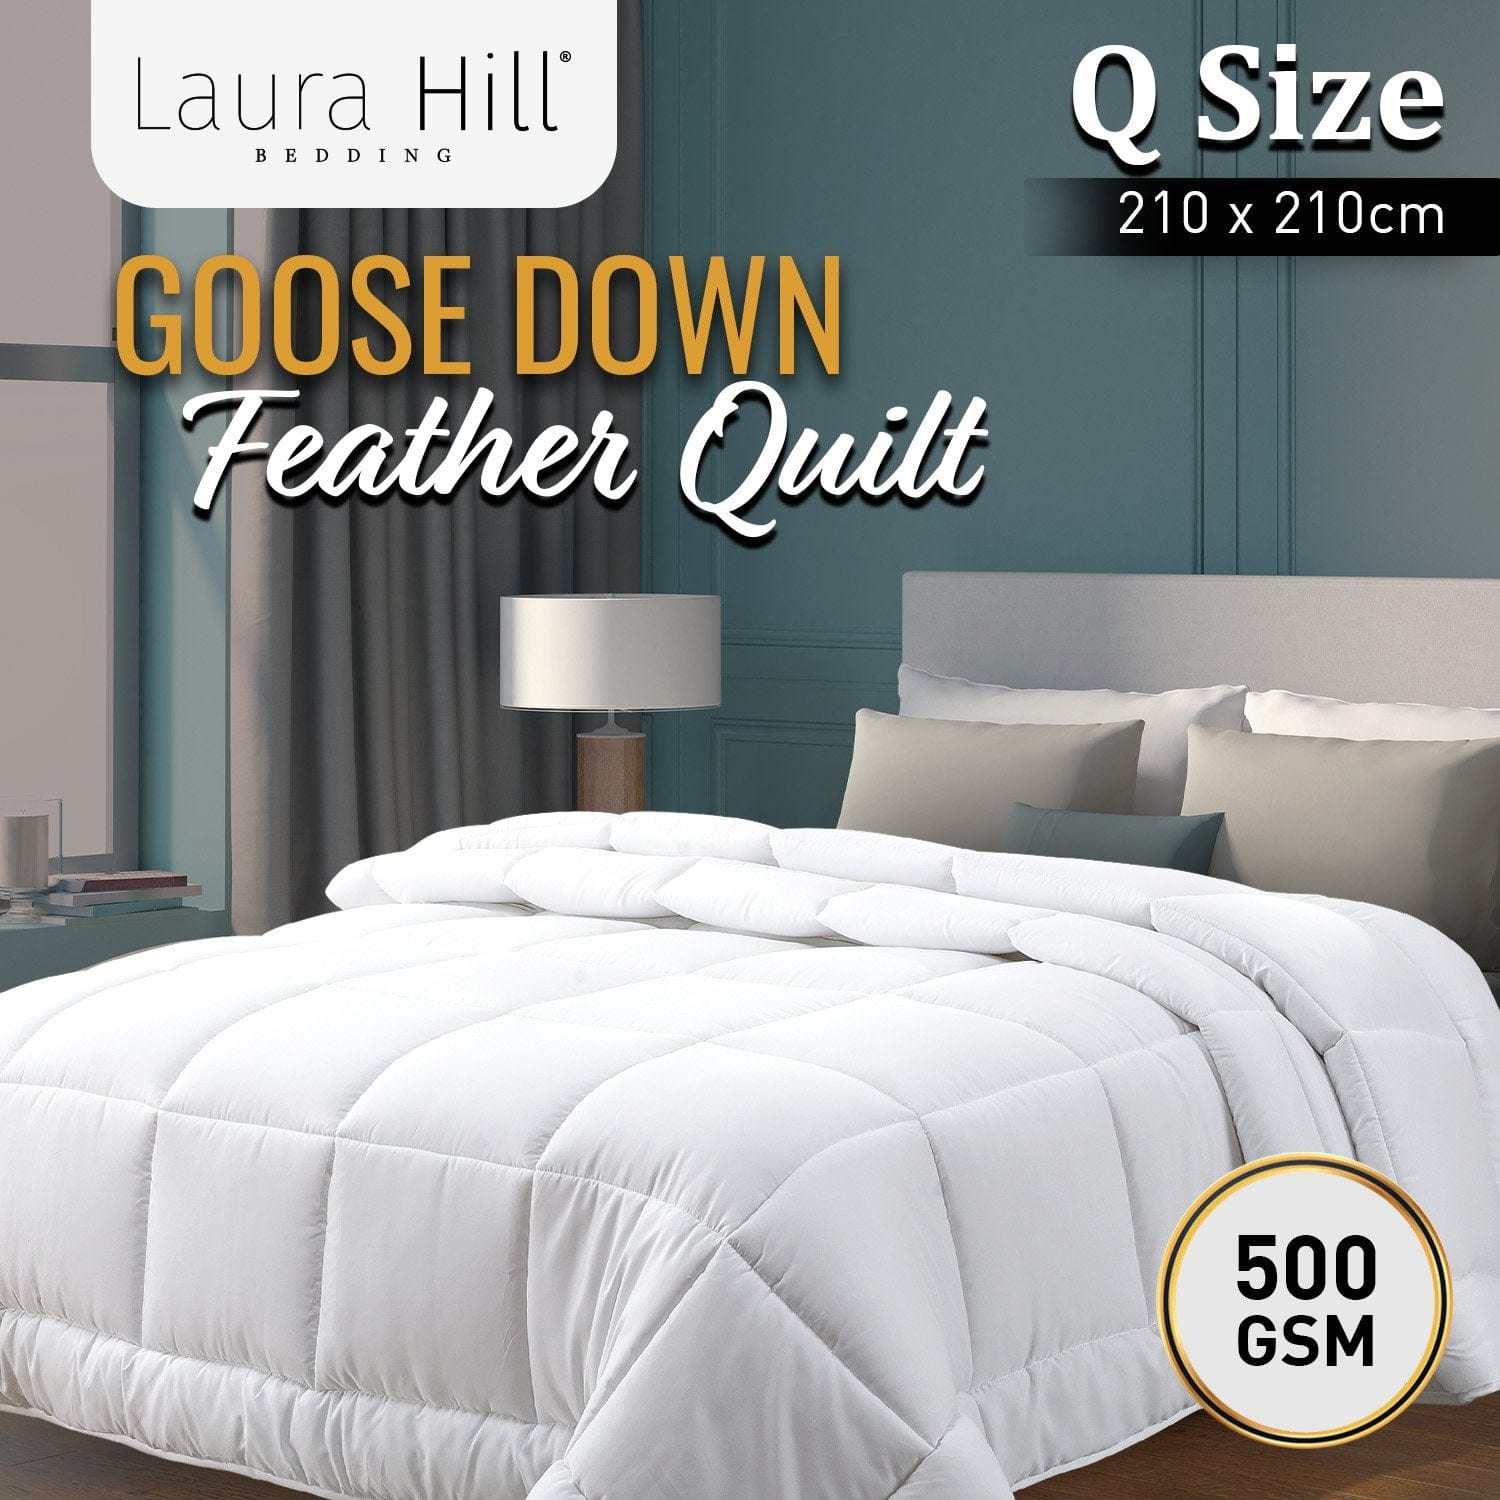 500GSM Goose Down Feather Comforter Doona - Queen